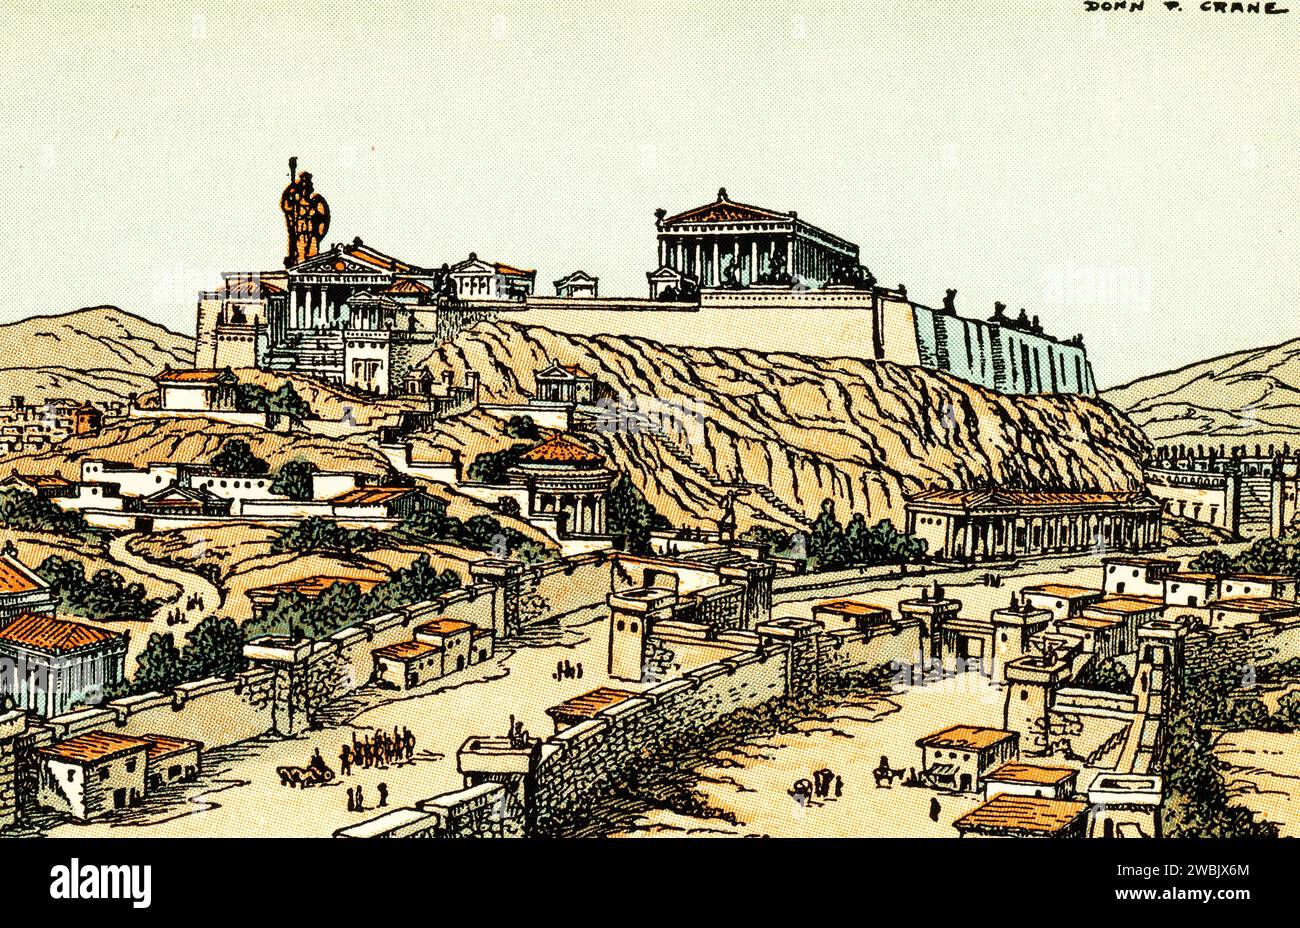 Reconstruction par un artiste de l'Acropole d'Athènes telle qu'elle était à l'époque de Périclès, c1930. Par Donn Philip Crane (1878-1944). L'Acropole d'Athènes est une ancienne citadelle située au-dessus de la ville d'Athènes, en Grèce. Bien qu'il y ait des preuves que la colline a été habitée dès le quatrième millénaire av. J.-C., c'est Périclès (c495-429 av. J.-C.) au cinquième siècle av. J.-C. qui a coordonné la construction des bâtiments dont les vestiges actuels sont les plus importants du site, y compris le Parthénon, les Propylées, l'Erechtheion et le Temple d'Athéna Nike. Banque D'Images